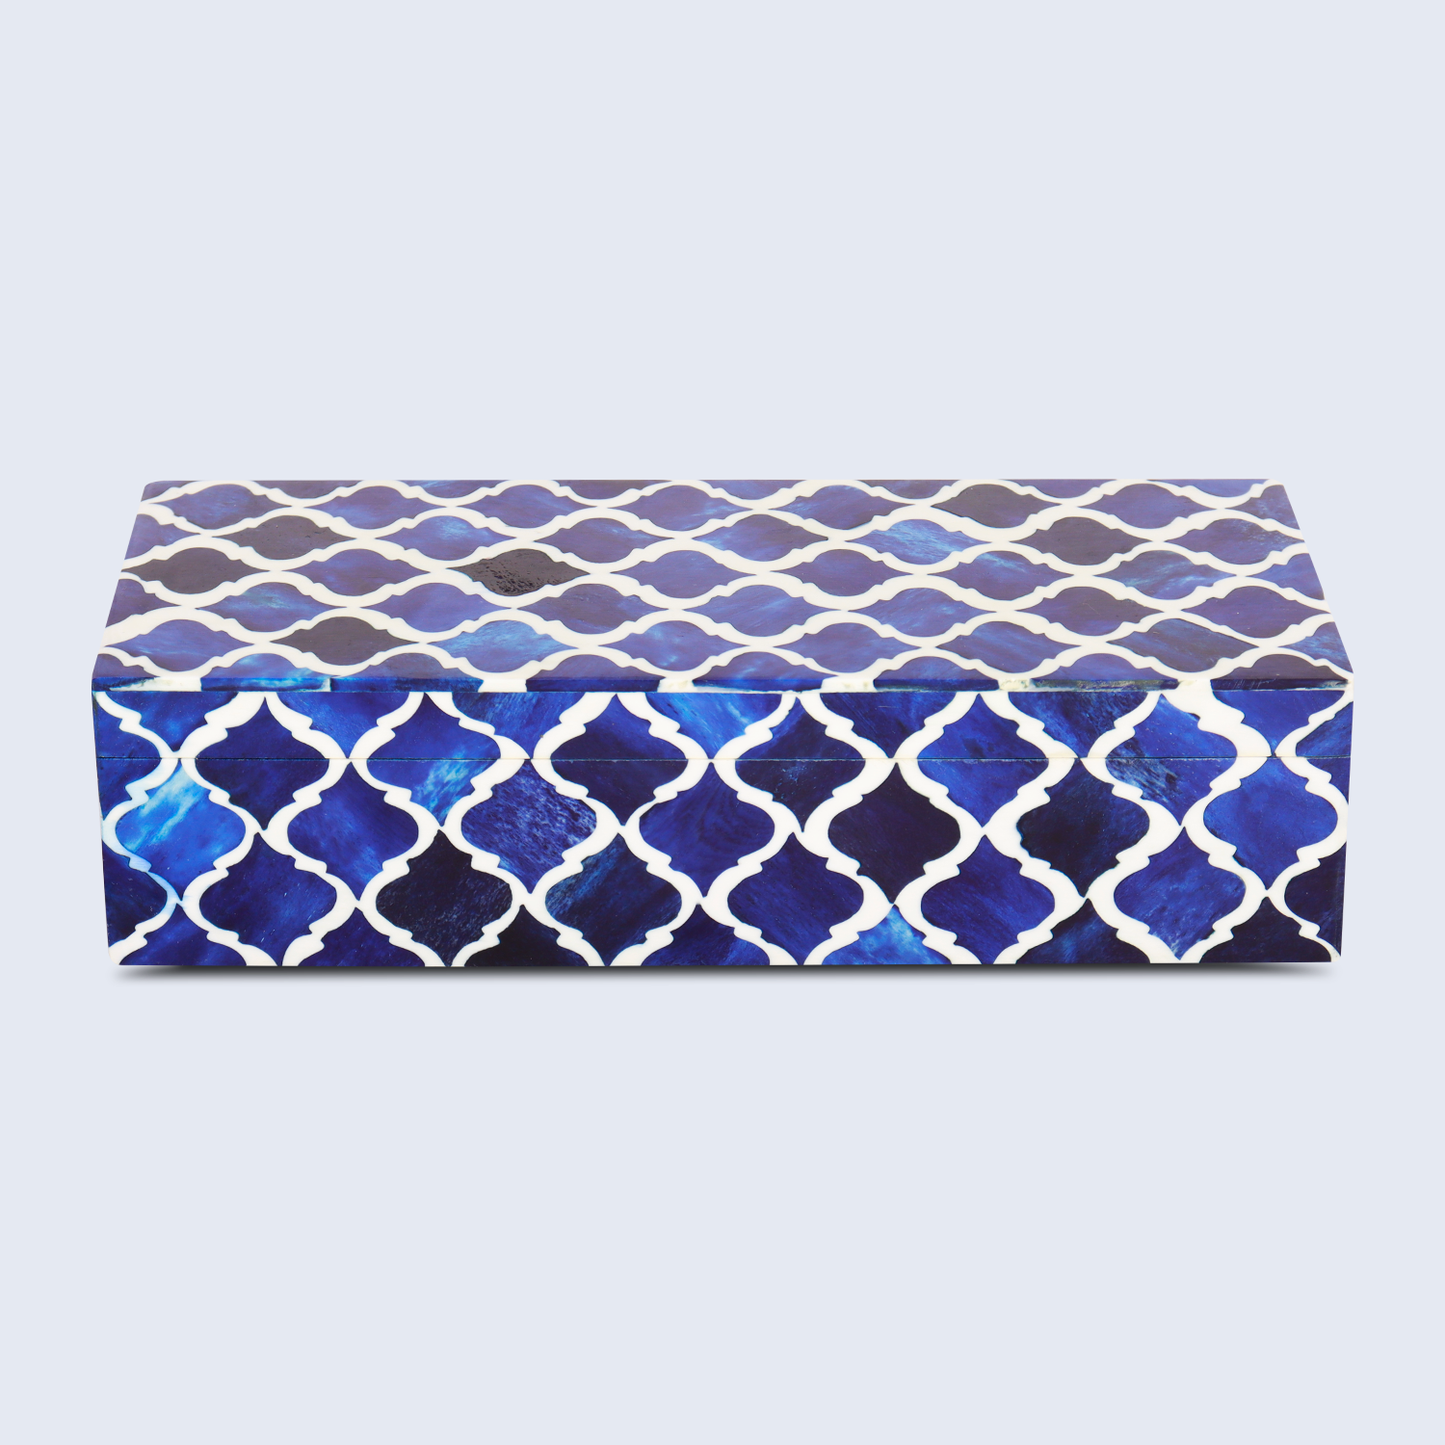 Decorative Box Moroccan Blue & White 10x4.5x2.5 Inch